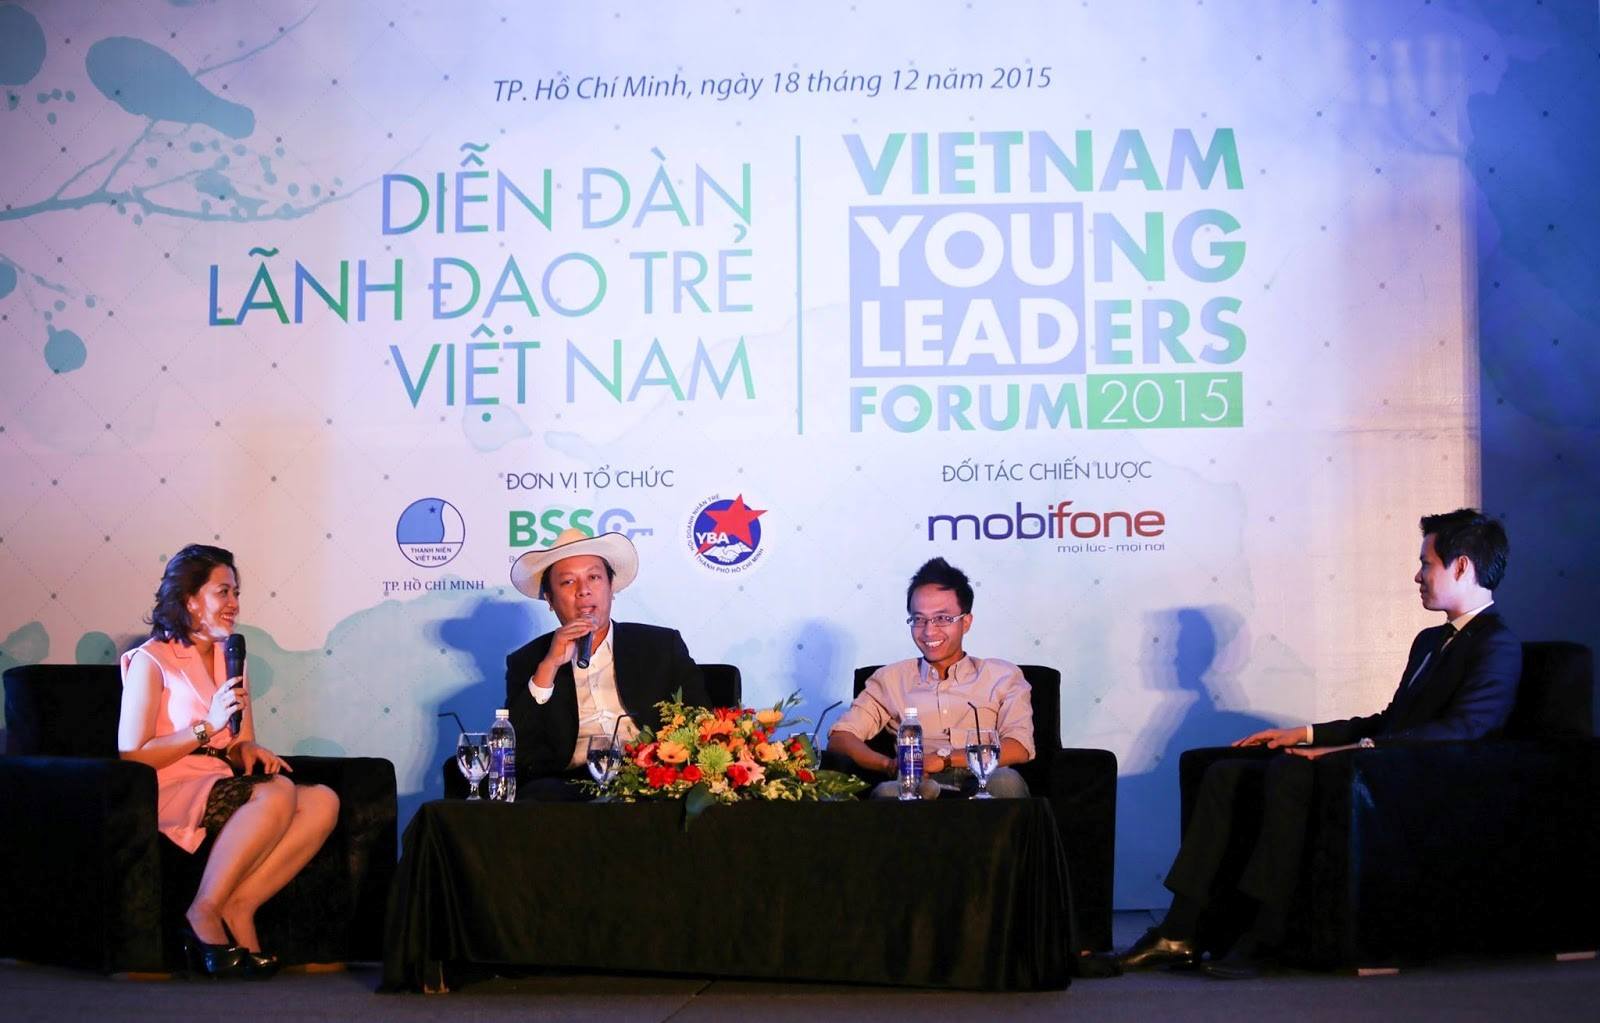 Từ trái qua phải: Chị Trương Lý Hoàng Phi – Giám đốc BSSC, Nguyễn Đình Nguyên – CEO PhinDeli, Nguyễn Hải Ninh – CEO The Coffe House, Nguyễn Trung Tín – CEO Trung Thủy Group